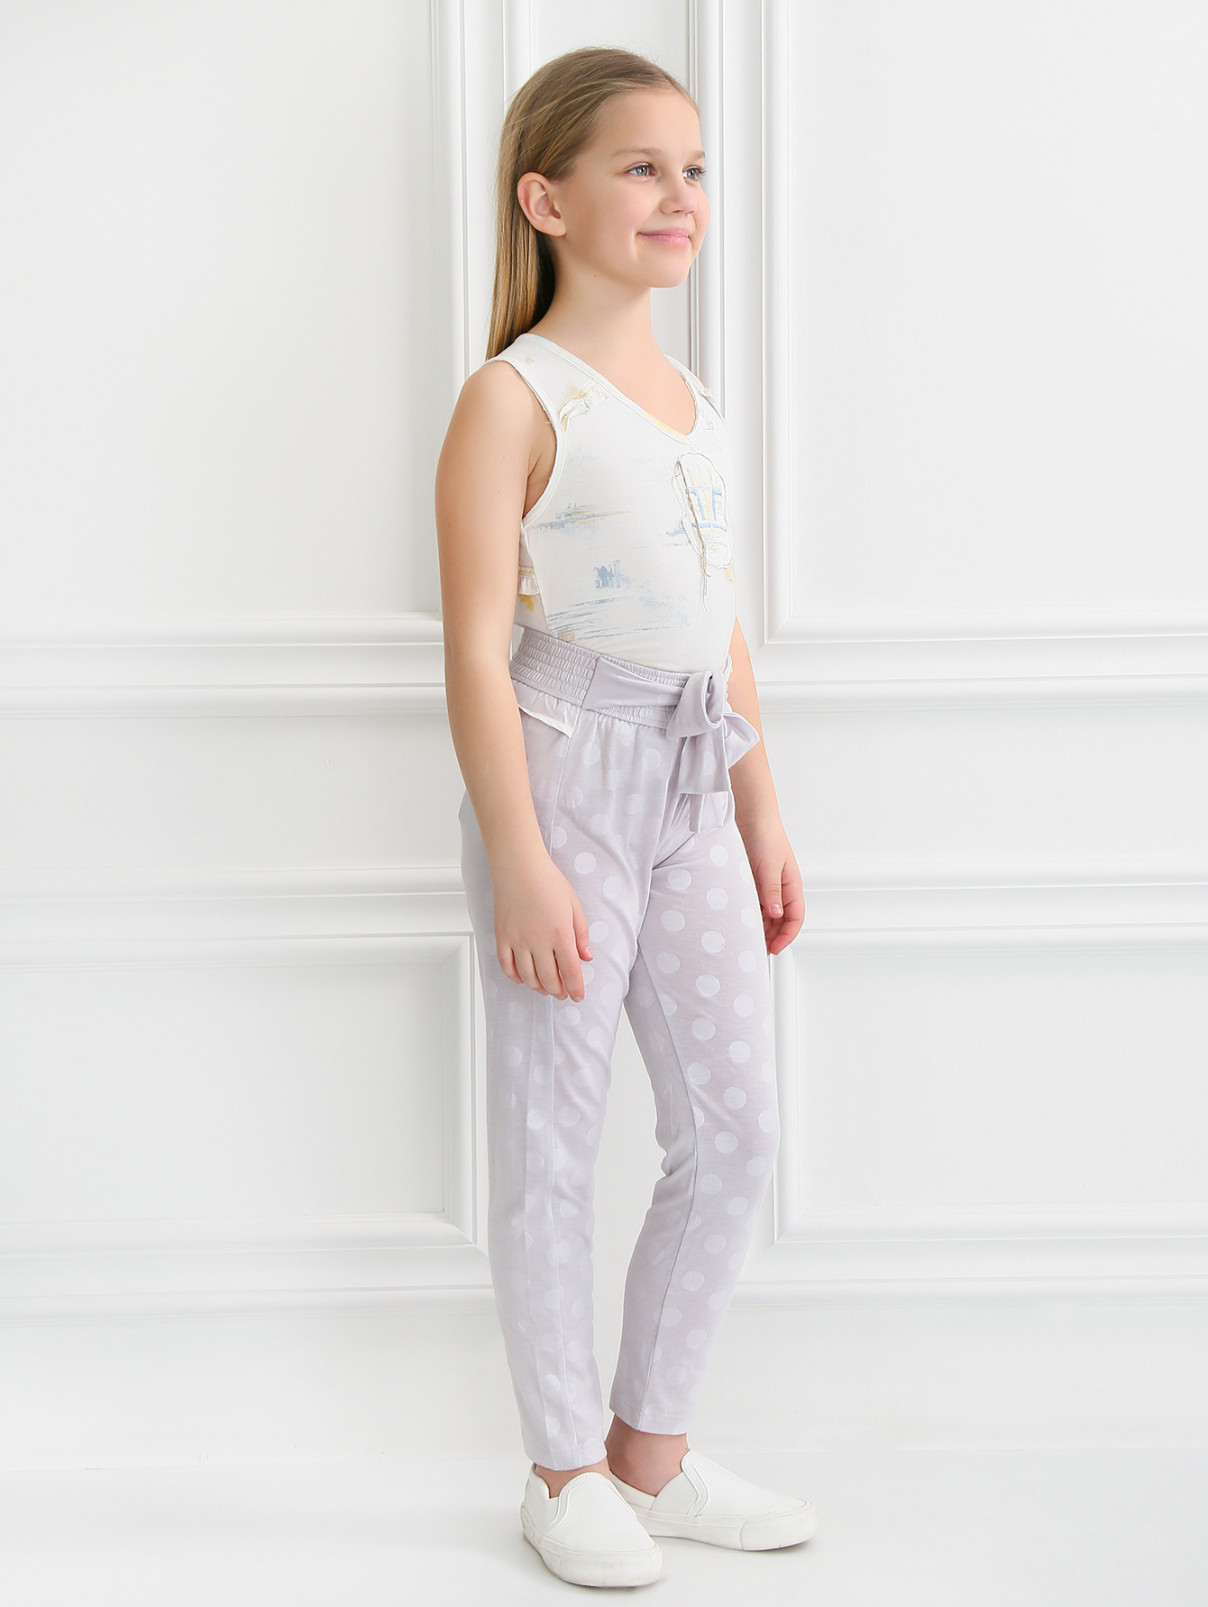 Трикотажные брюки с бантиком Marc Jacobs  –  Модель Общий вид  – Цвет:  Серый